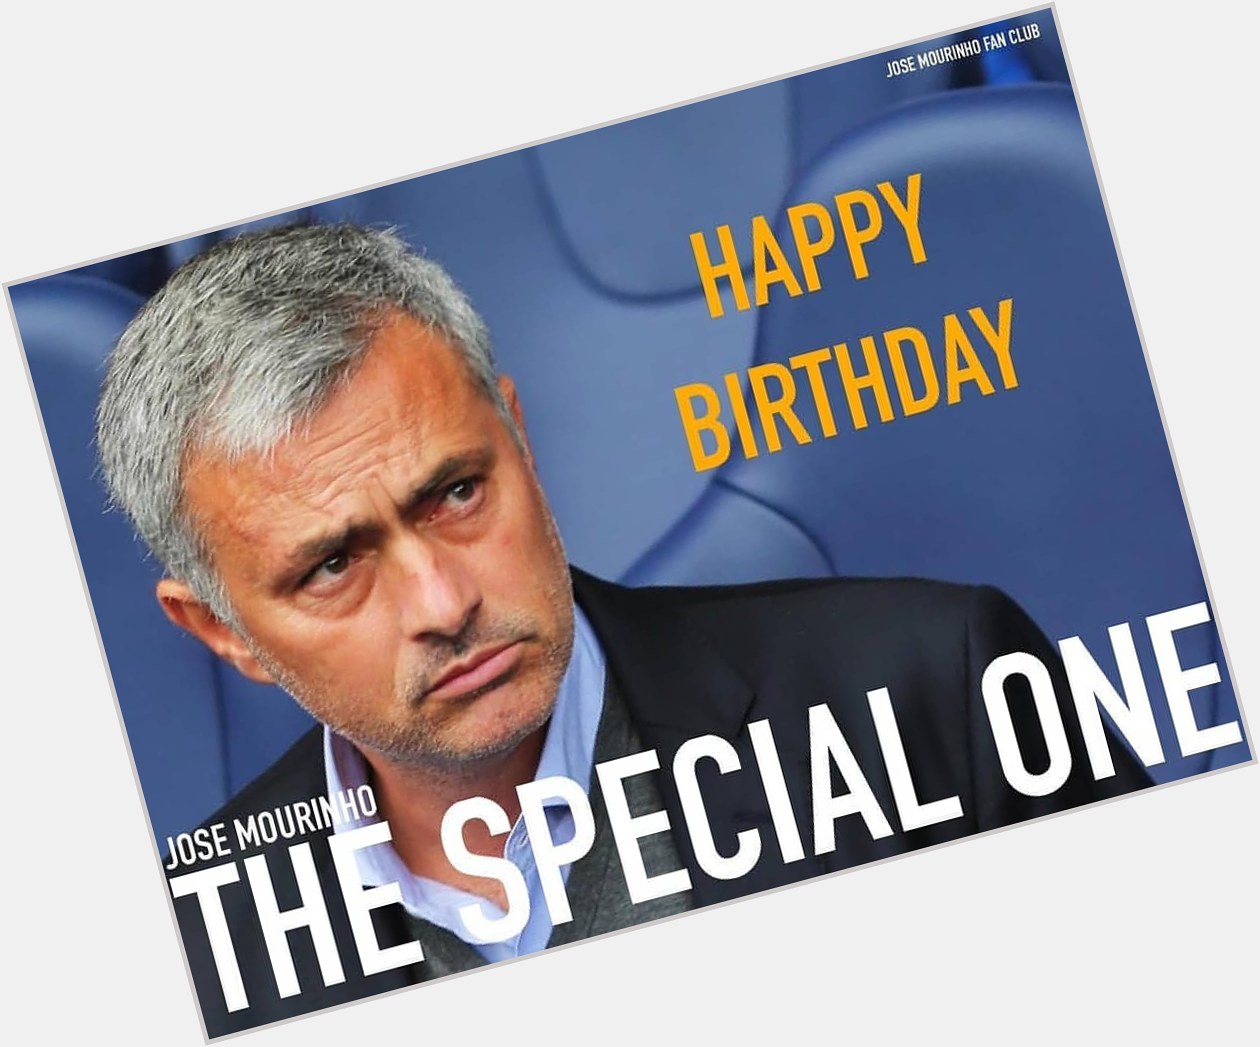 Happy Birthday to my N°1 coach José Mourinho .... I celebrate you THE SPECIAL ONE. 